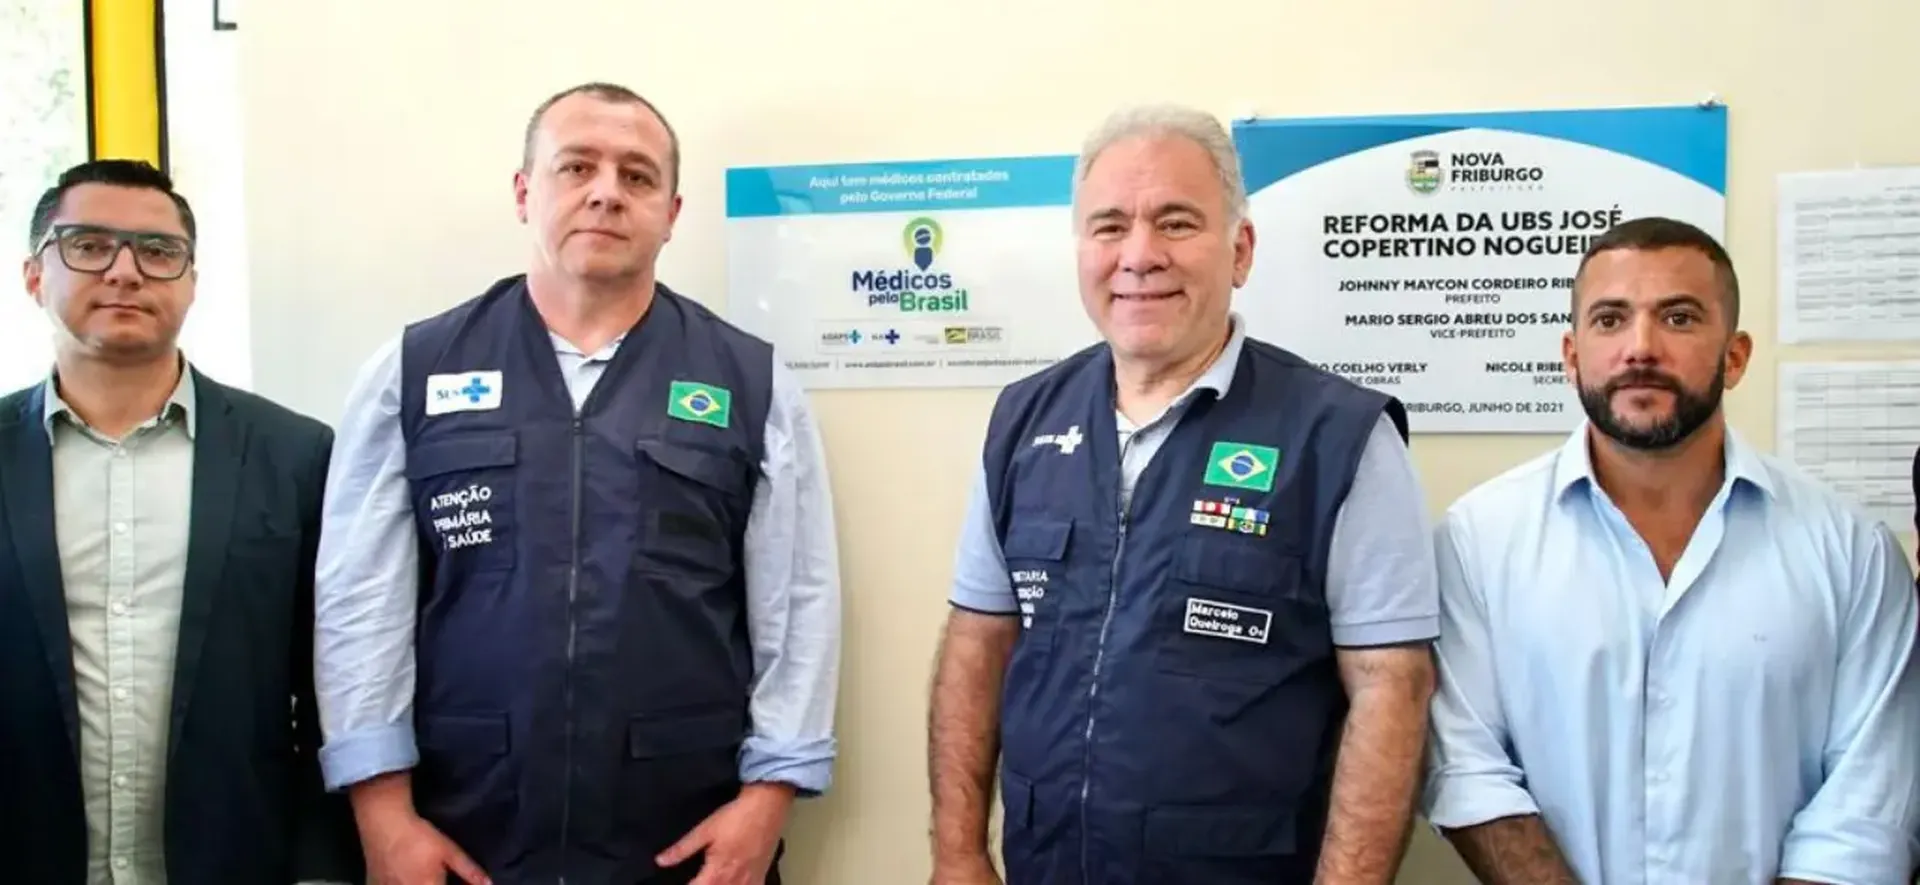 Nova Friburgo (RJ) recebe primeiros profissionais do Médicos pelo Brasil